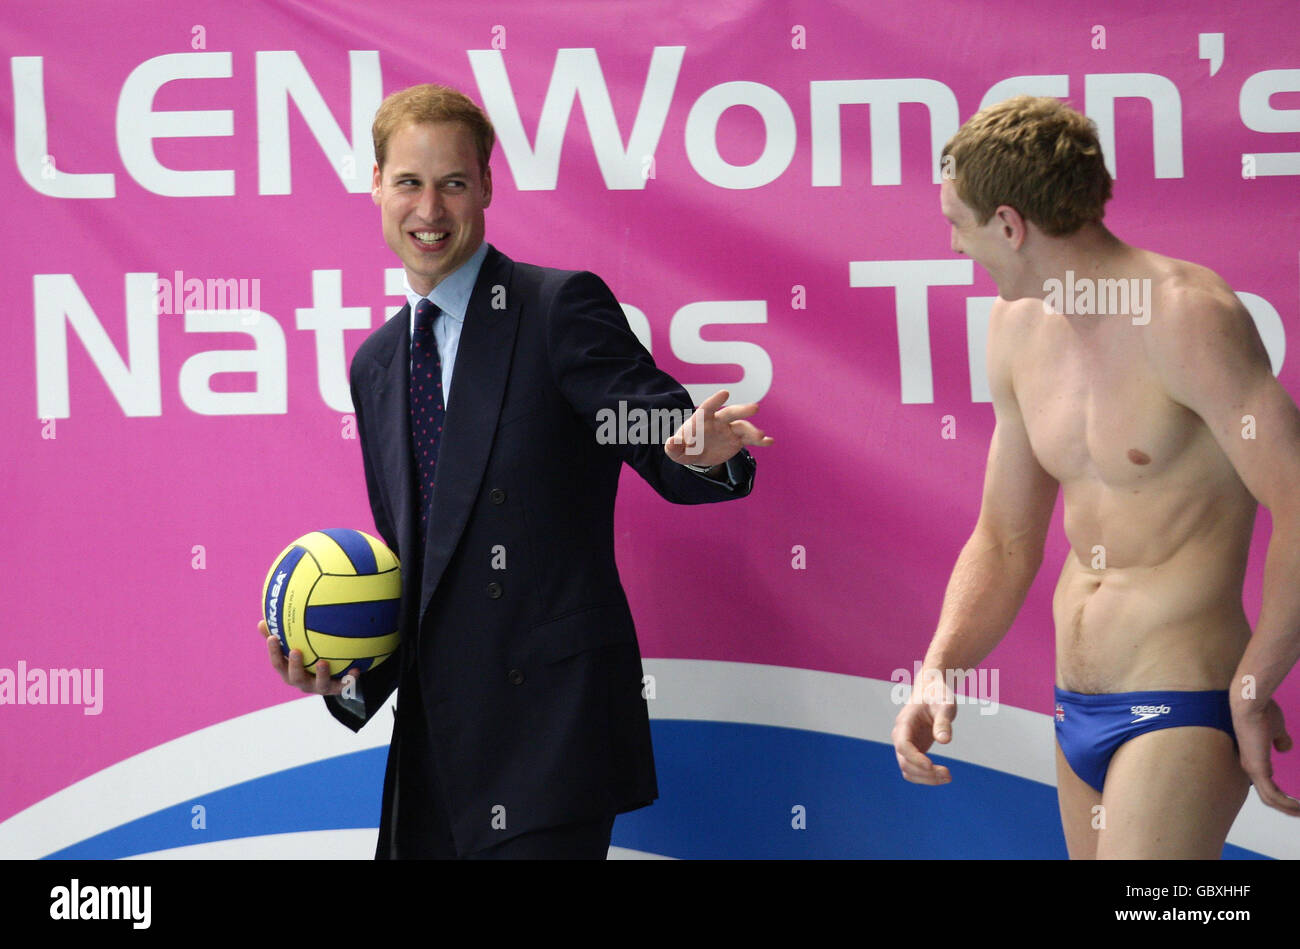 Le Prince William partage une blague avec le joueur de grand Briain Tom Curwen avant de lancer le ballon pour lancer le match de Grande-Bretagne contre la Slovaquie lors du LEN Women's European Nations Trophée au Manchester Aquatics Center, Manchester. Banque D'Images